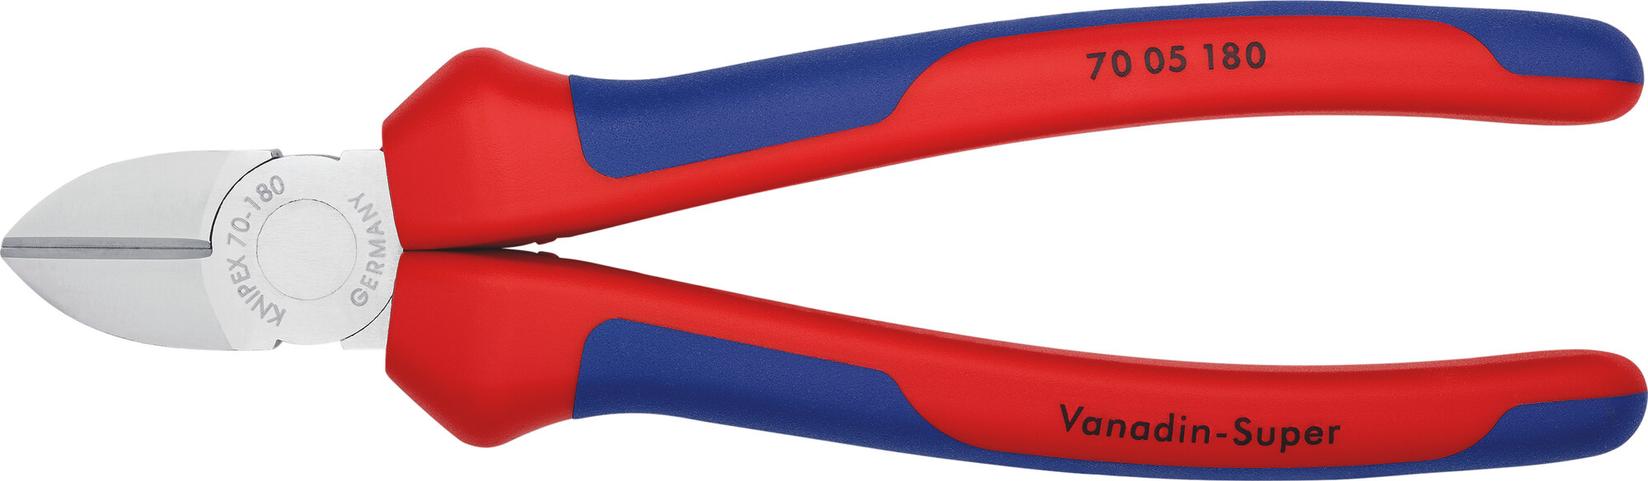 KNIPEX Bočne sečice hromirane 180 mm 70 05 180 crveno-plave